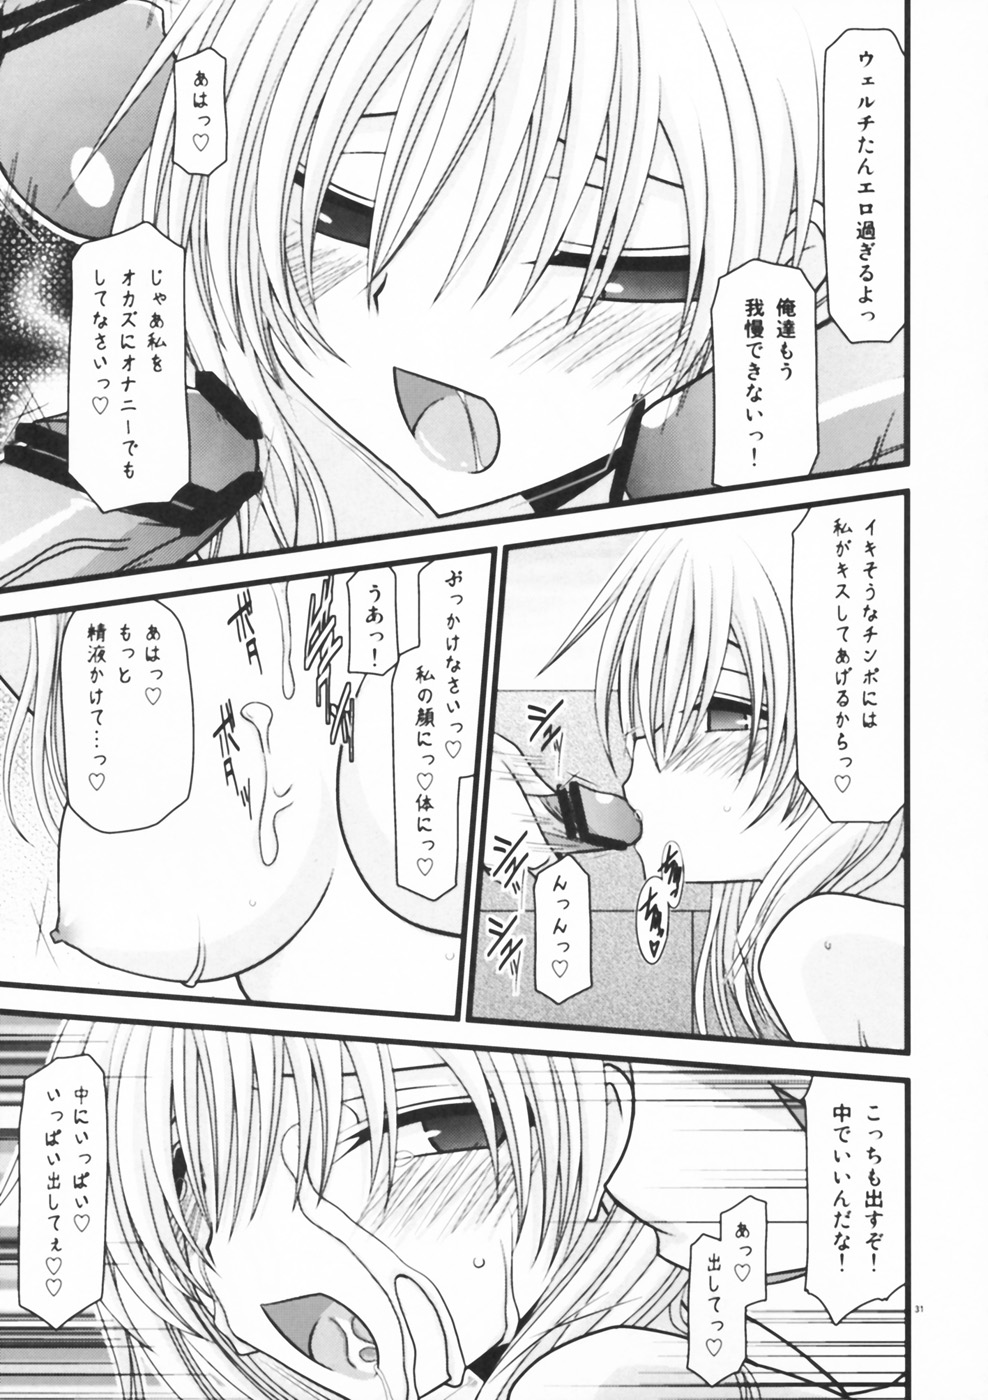 [valssu (Charu)] Horegusuri no Goshiyou wa Keikakuteki ni (Star Ocean: The Second Story) page 31 full